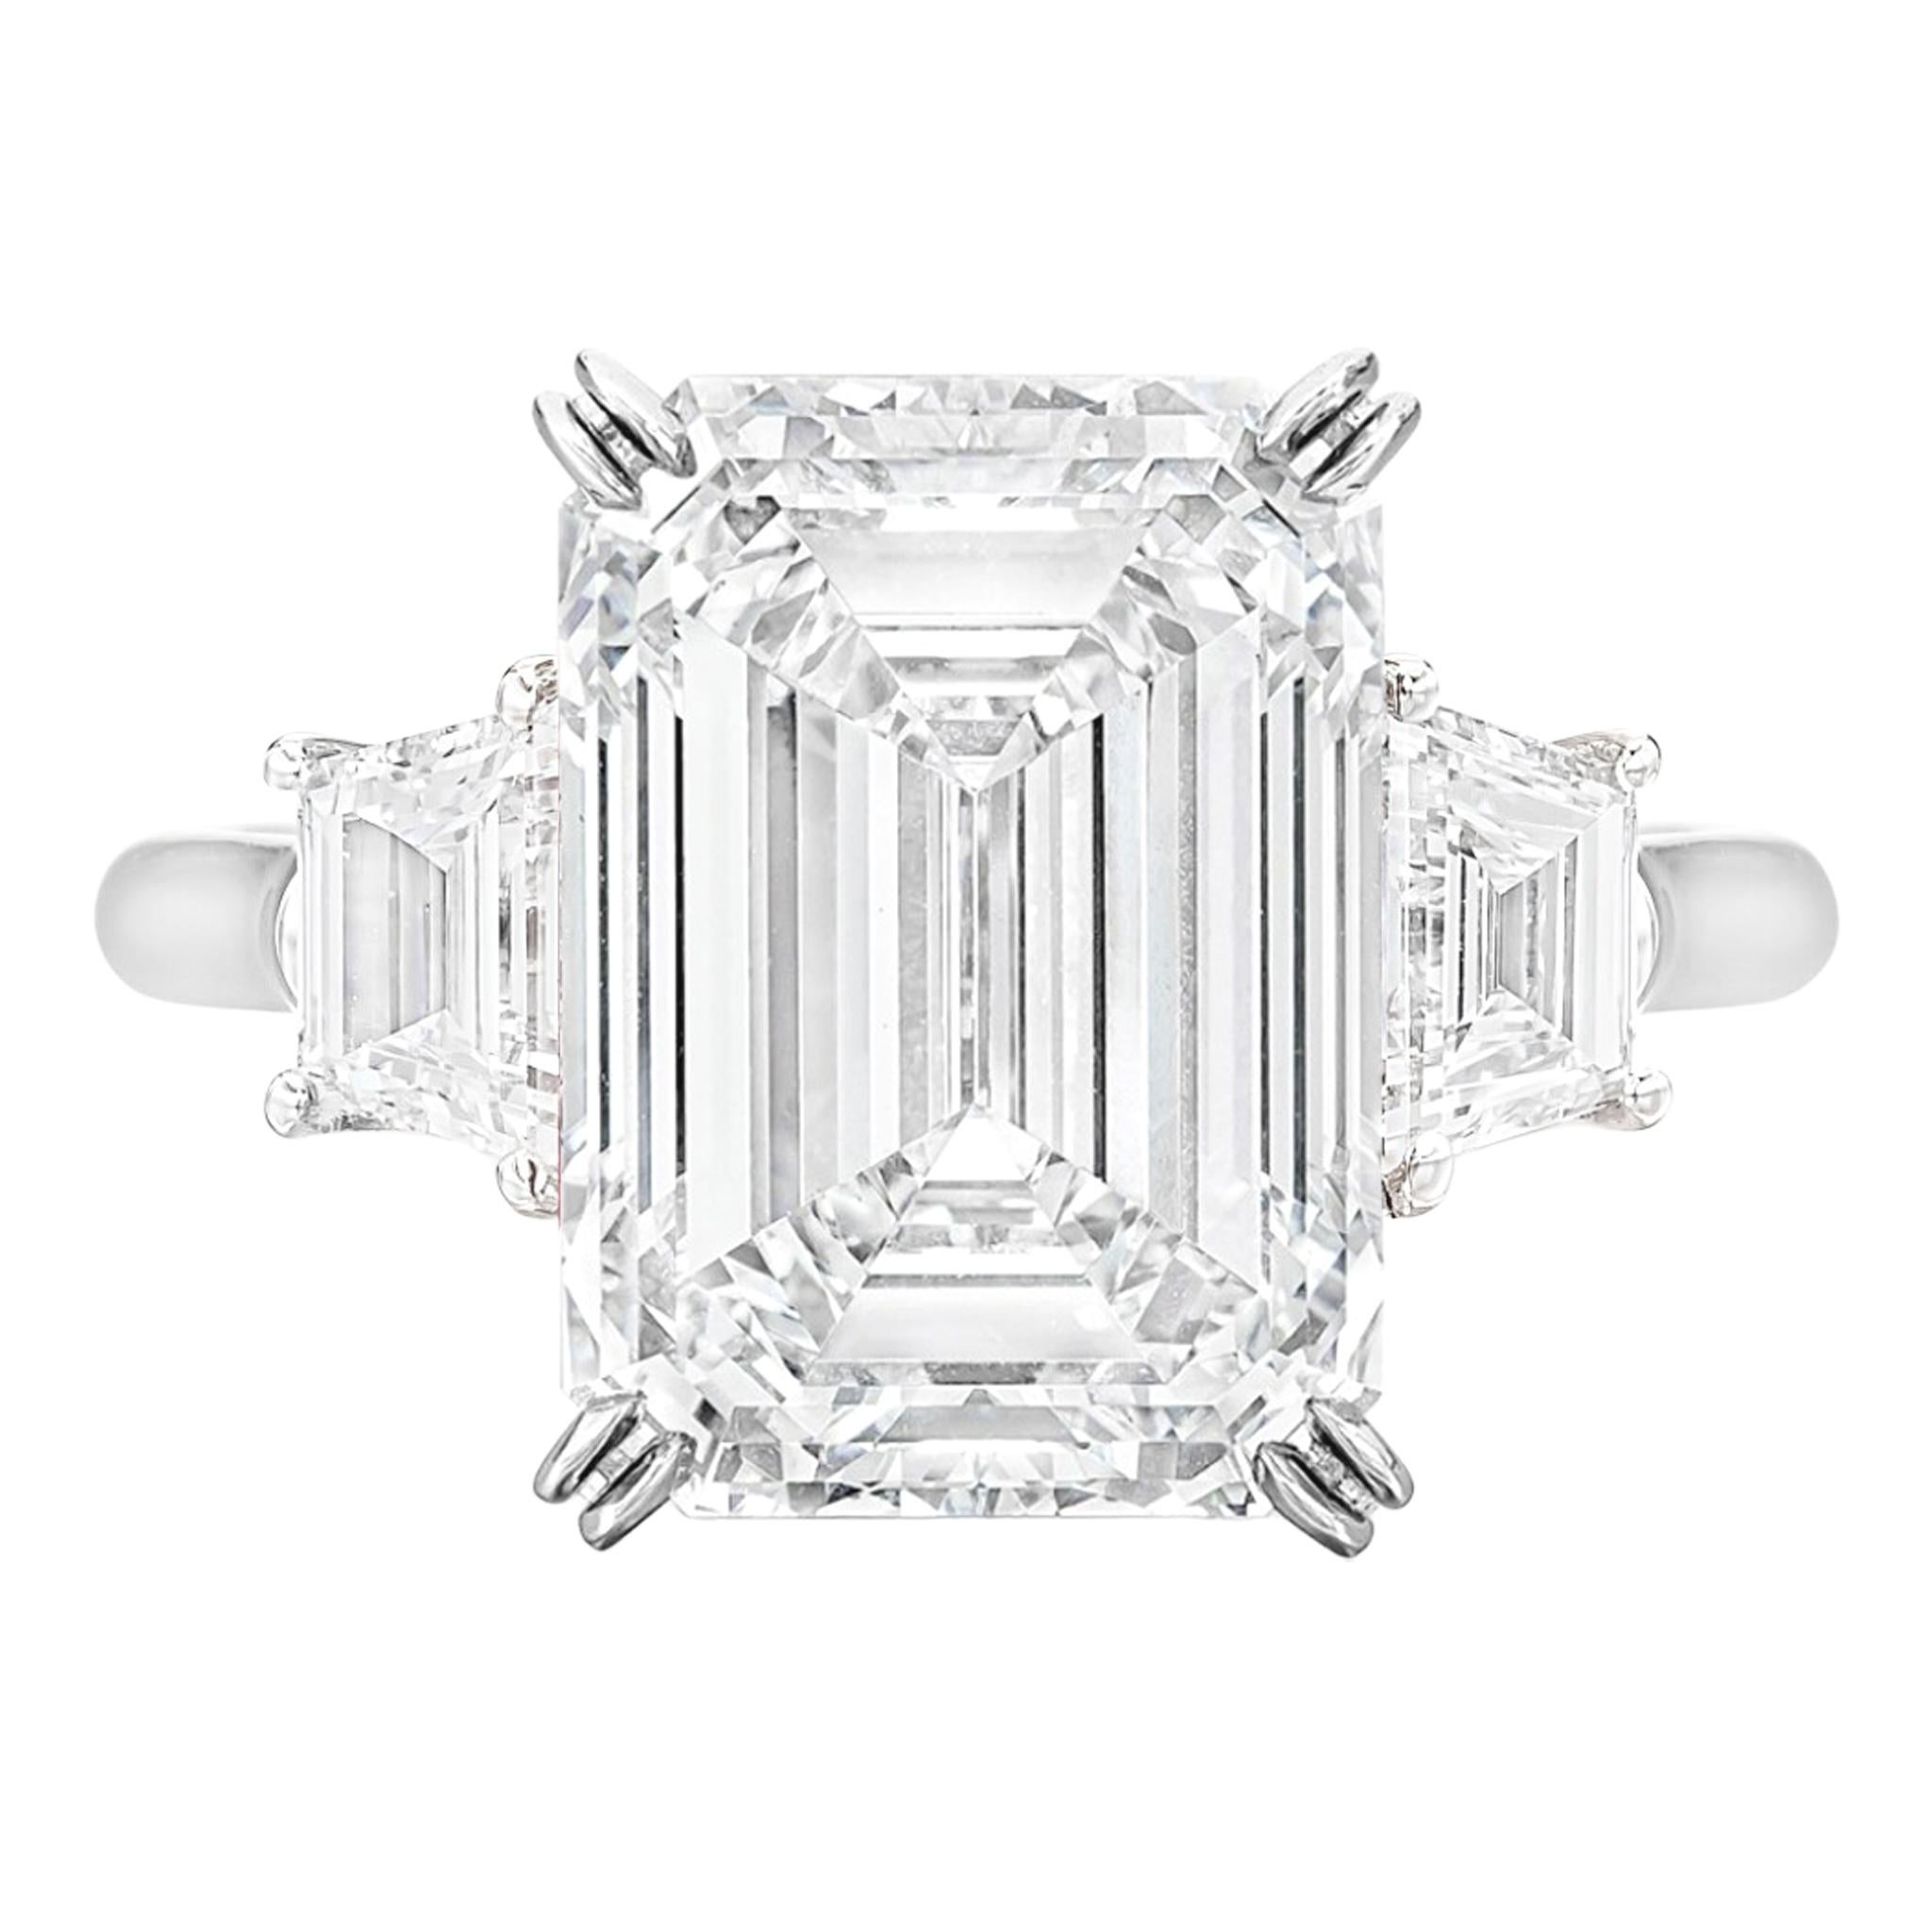 Schöner Ring mit einem erstaunlichen 10 Karat Smaragdschliff Diamantring. Der Rahmen ist aus Platin

Insgesamt ist es ein außergewöhnlicher Diamant.